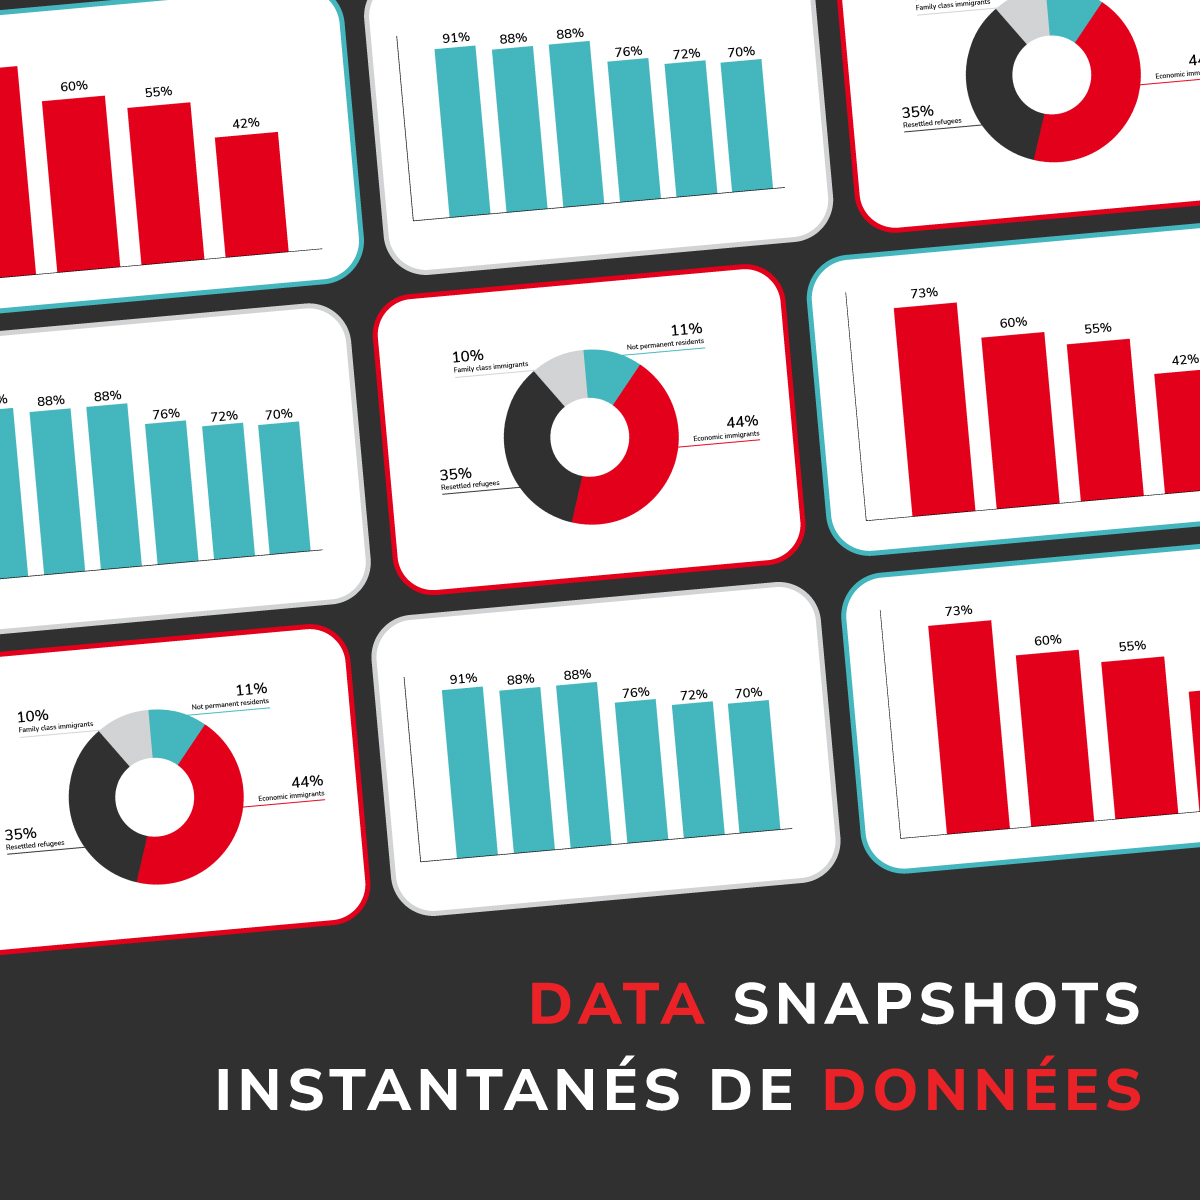 Data snapshots